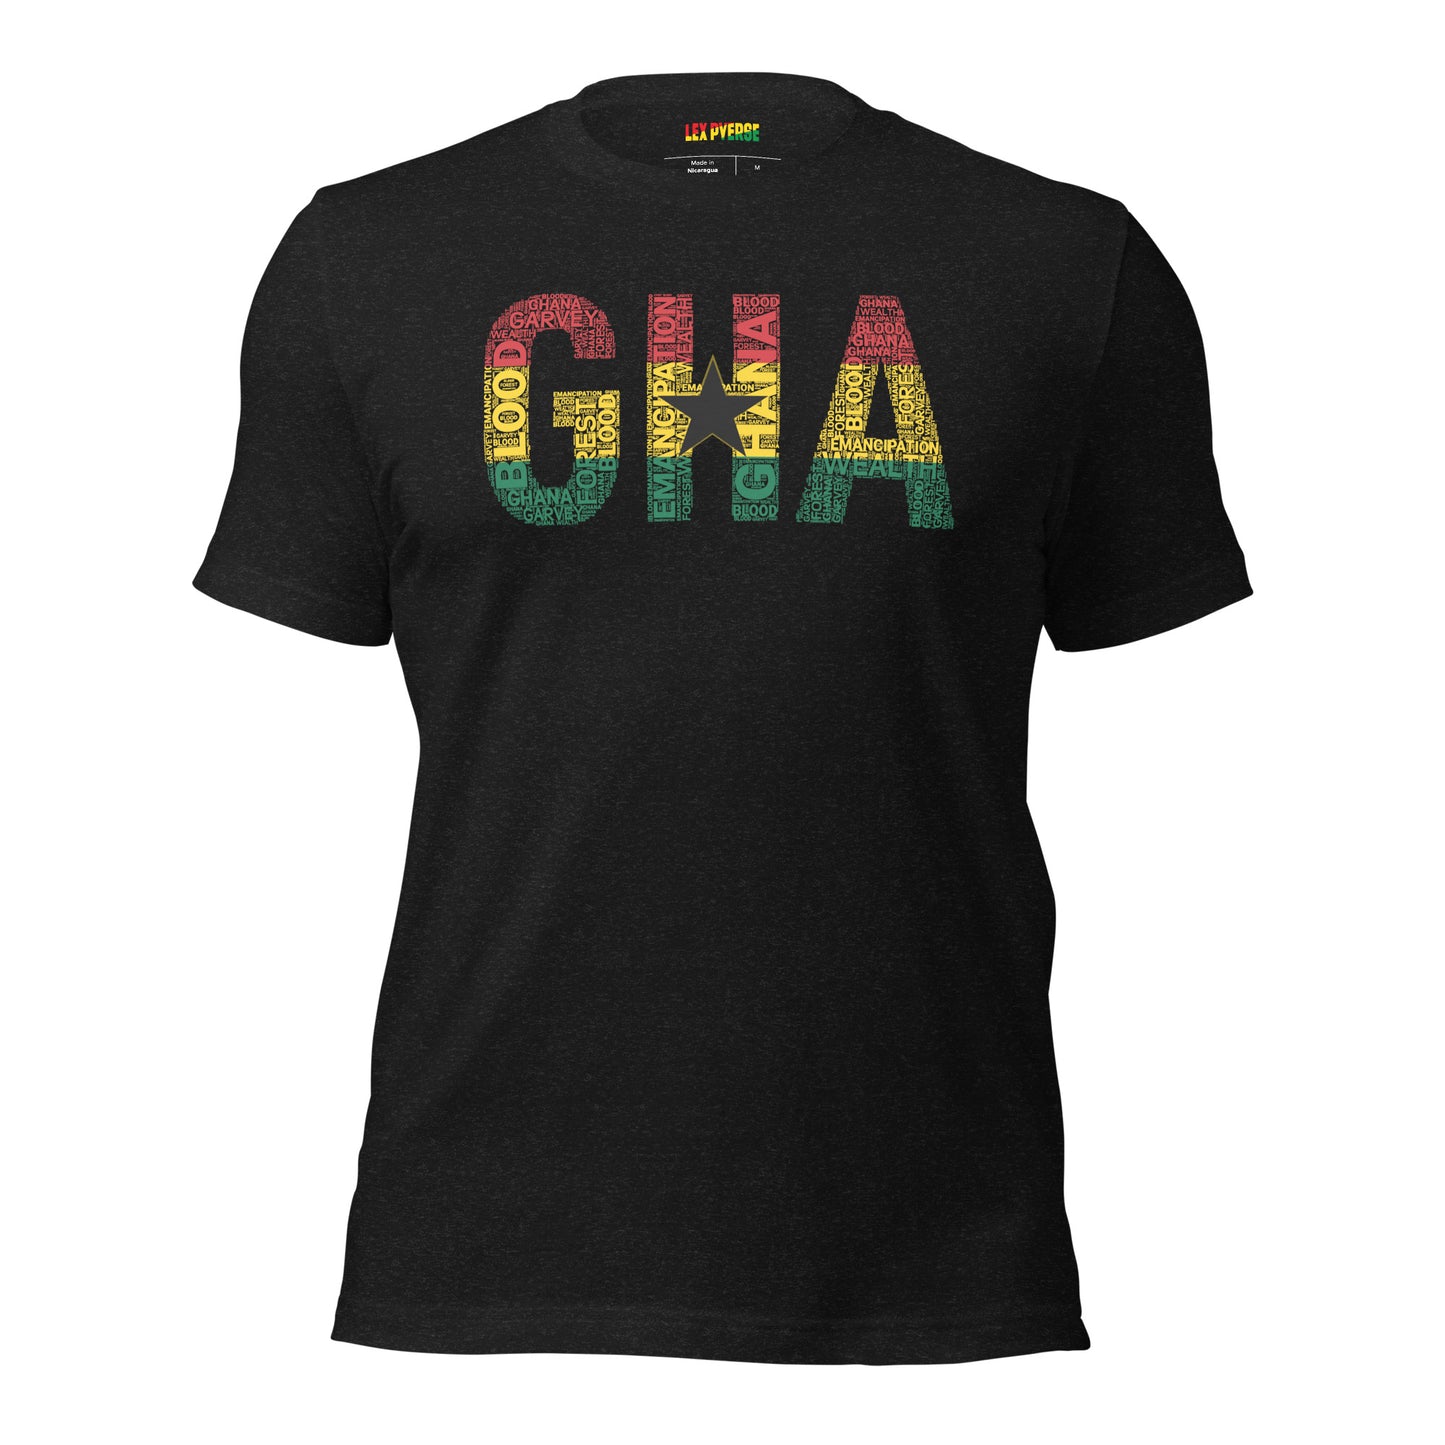 GHANA National Flag Inspired Word Cluster Short-Sleeve Unisex T-Shirt